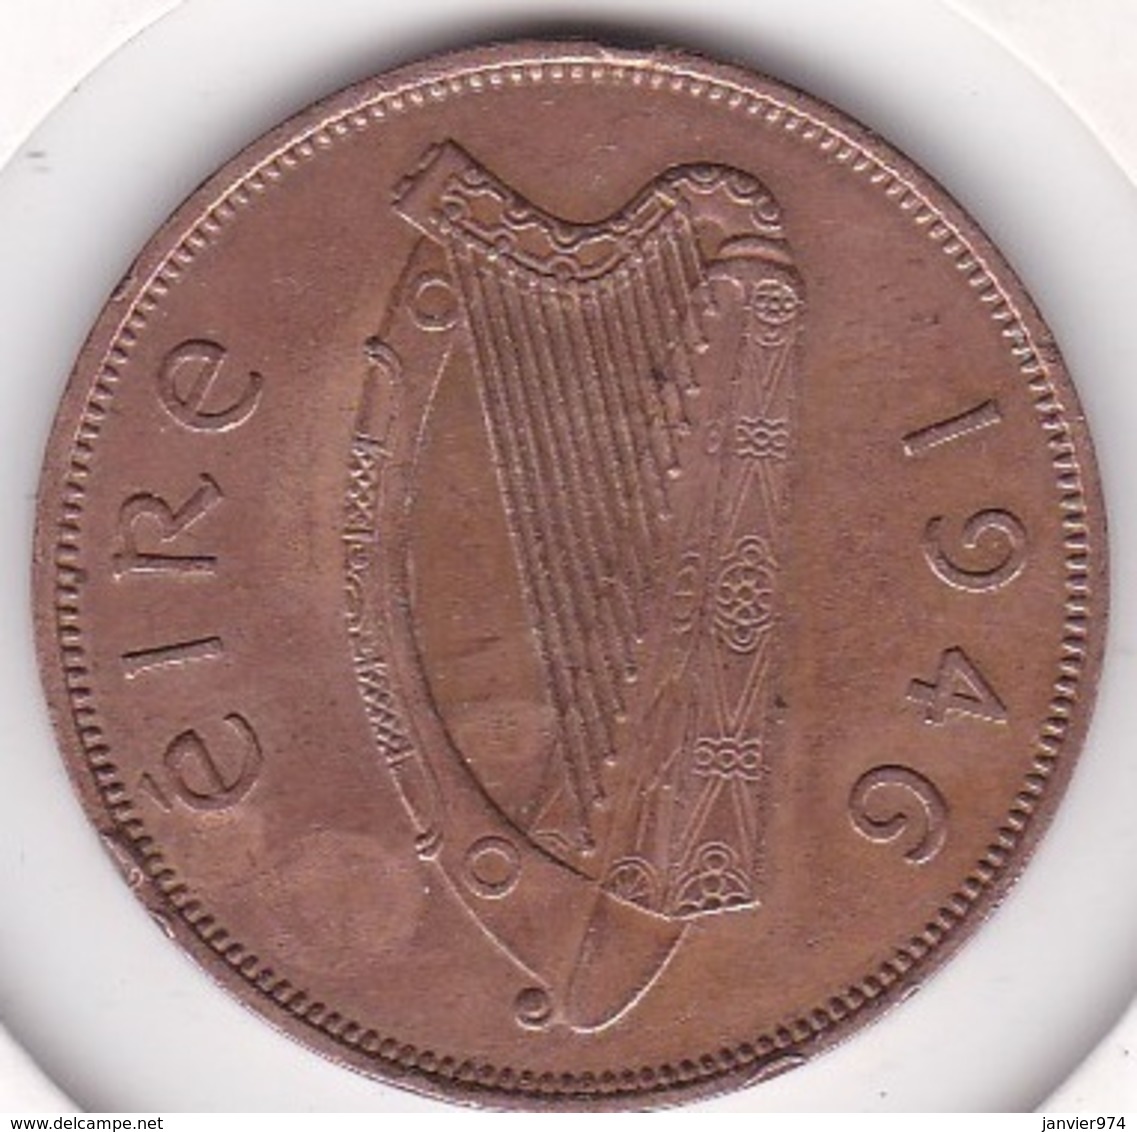 Irlande 1 Pingin 1946, En Bronze, KM# 11 - Ireland